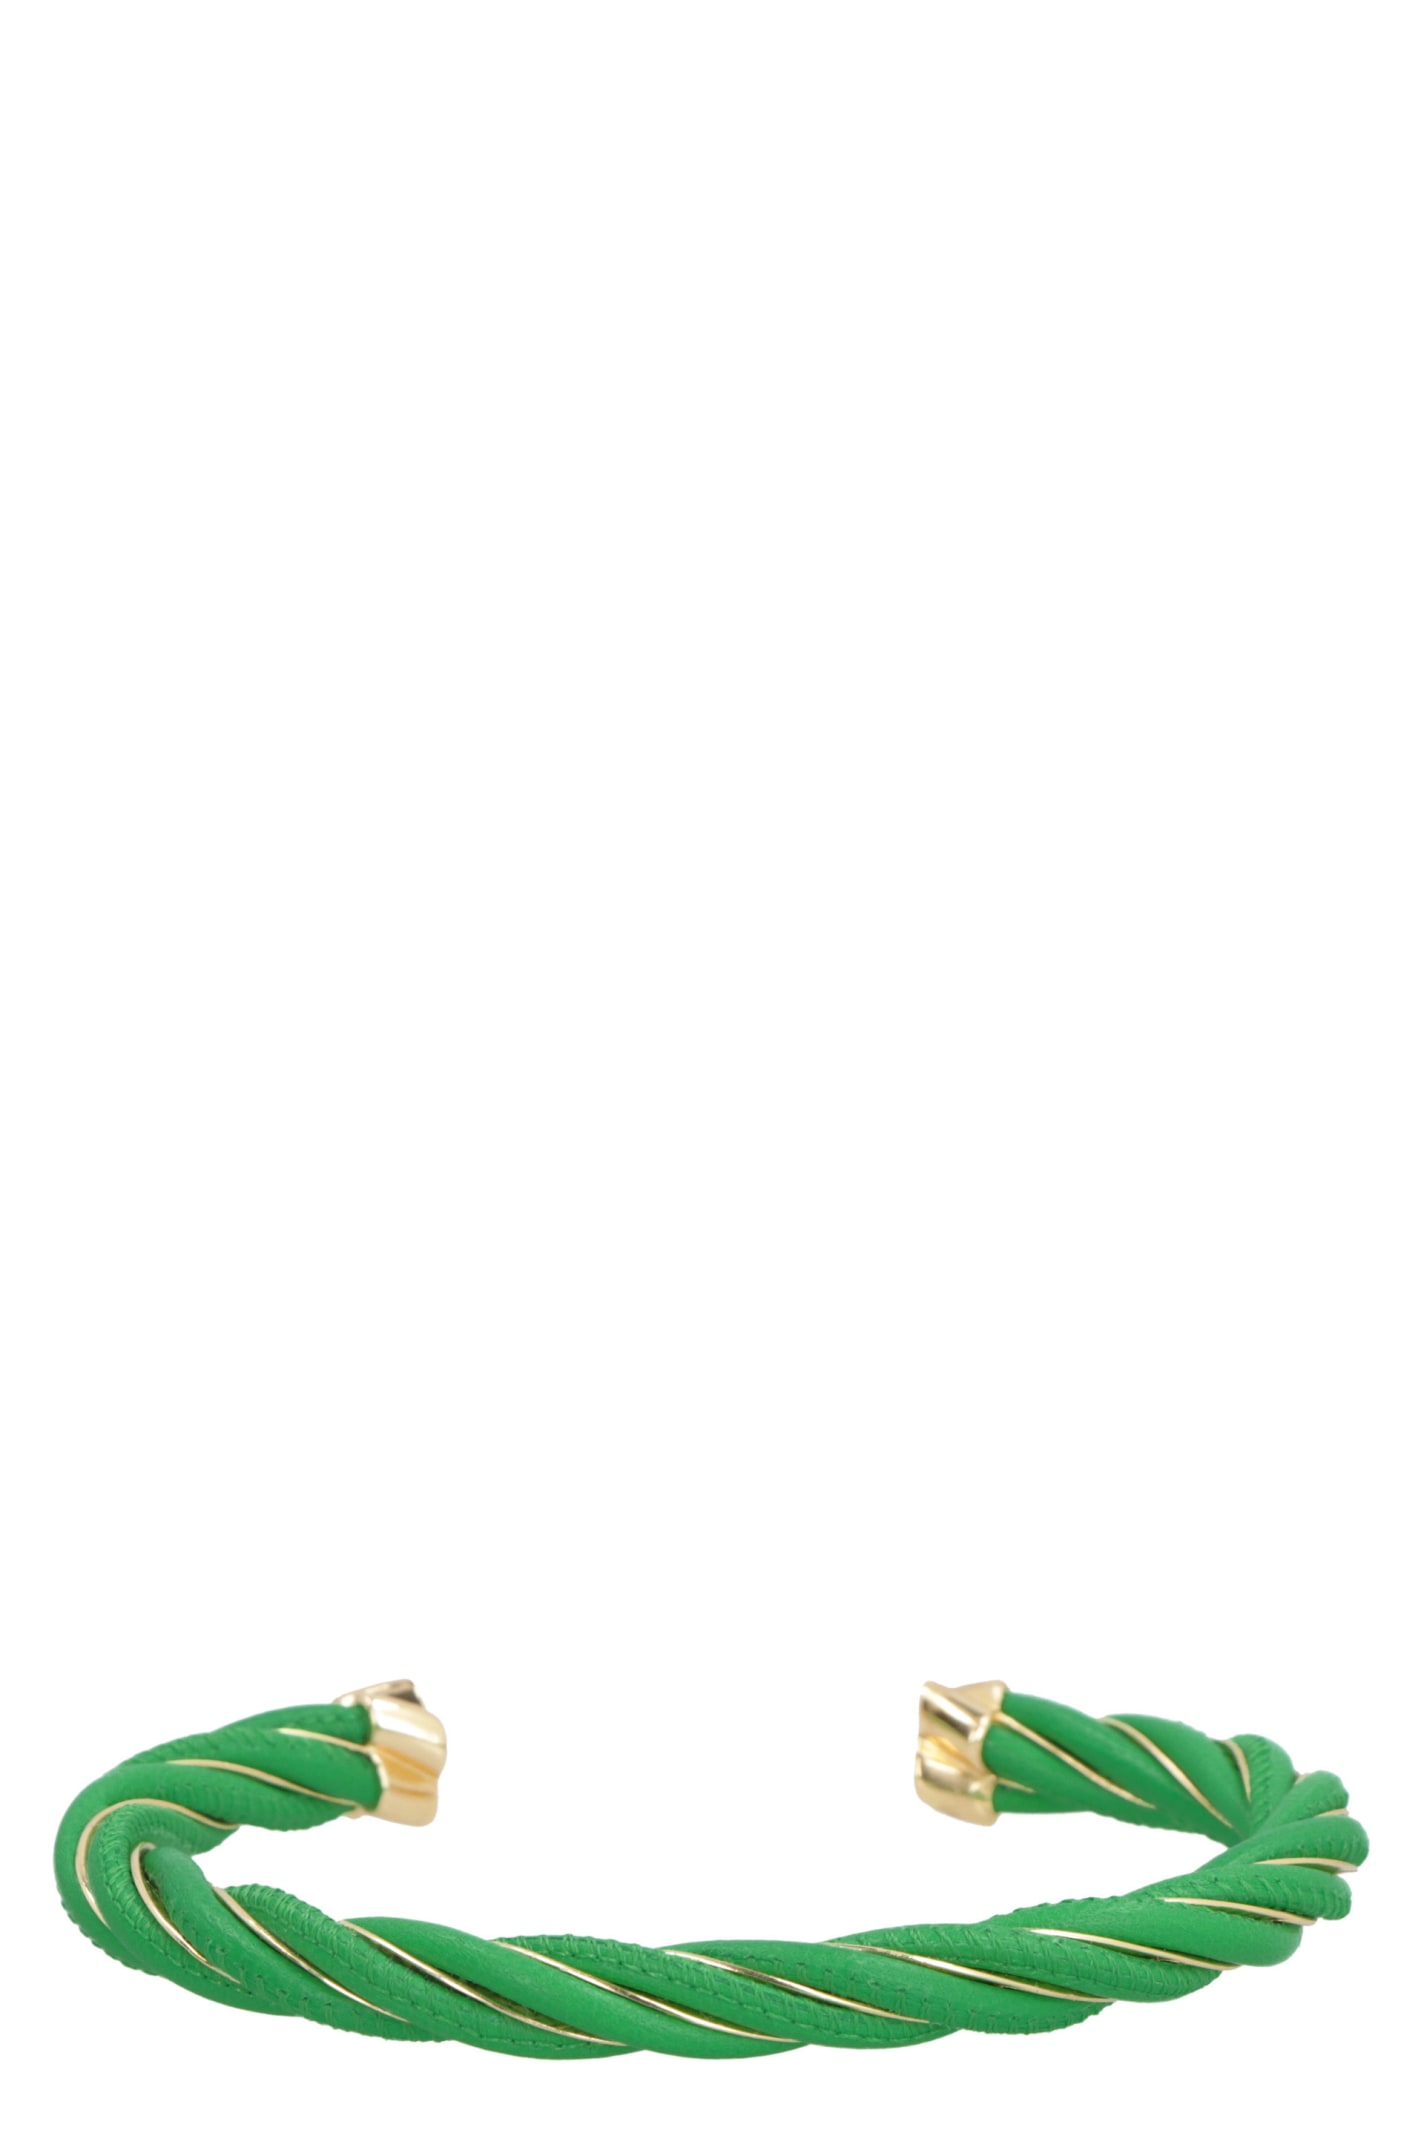 Bottega Veneta - Men - Braided Leather and Gold-Plated Bracelet Green - L